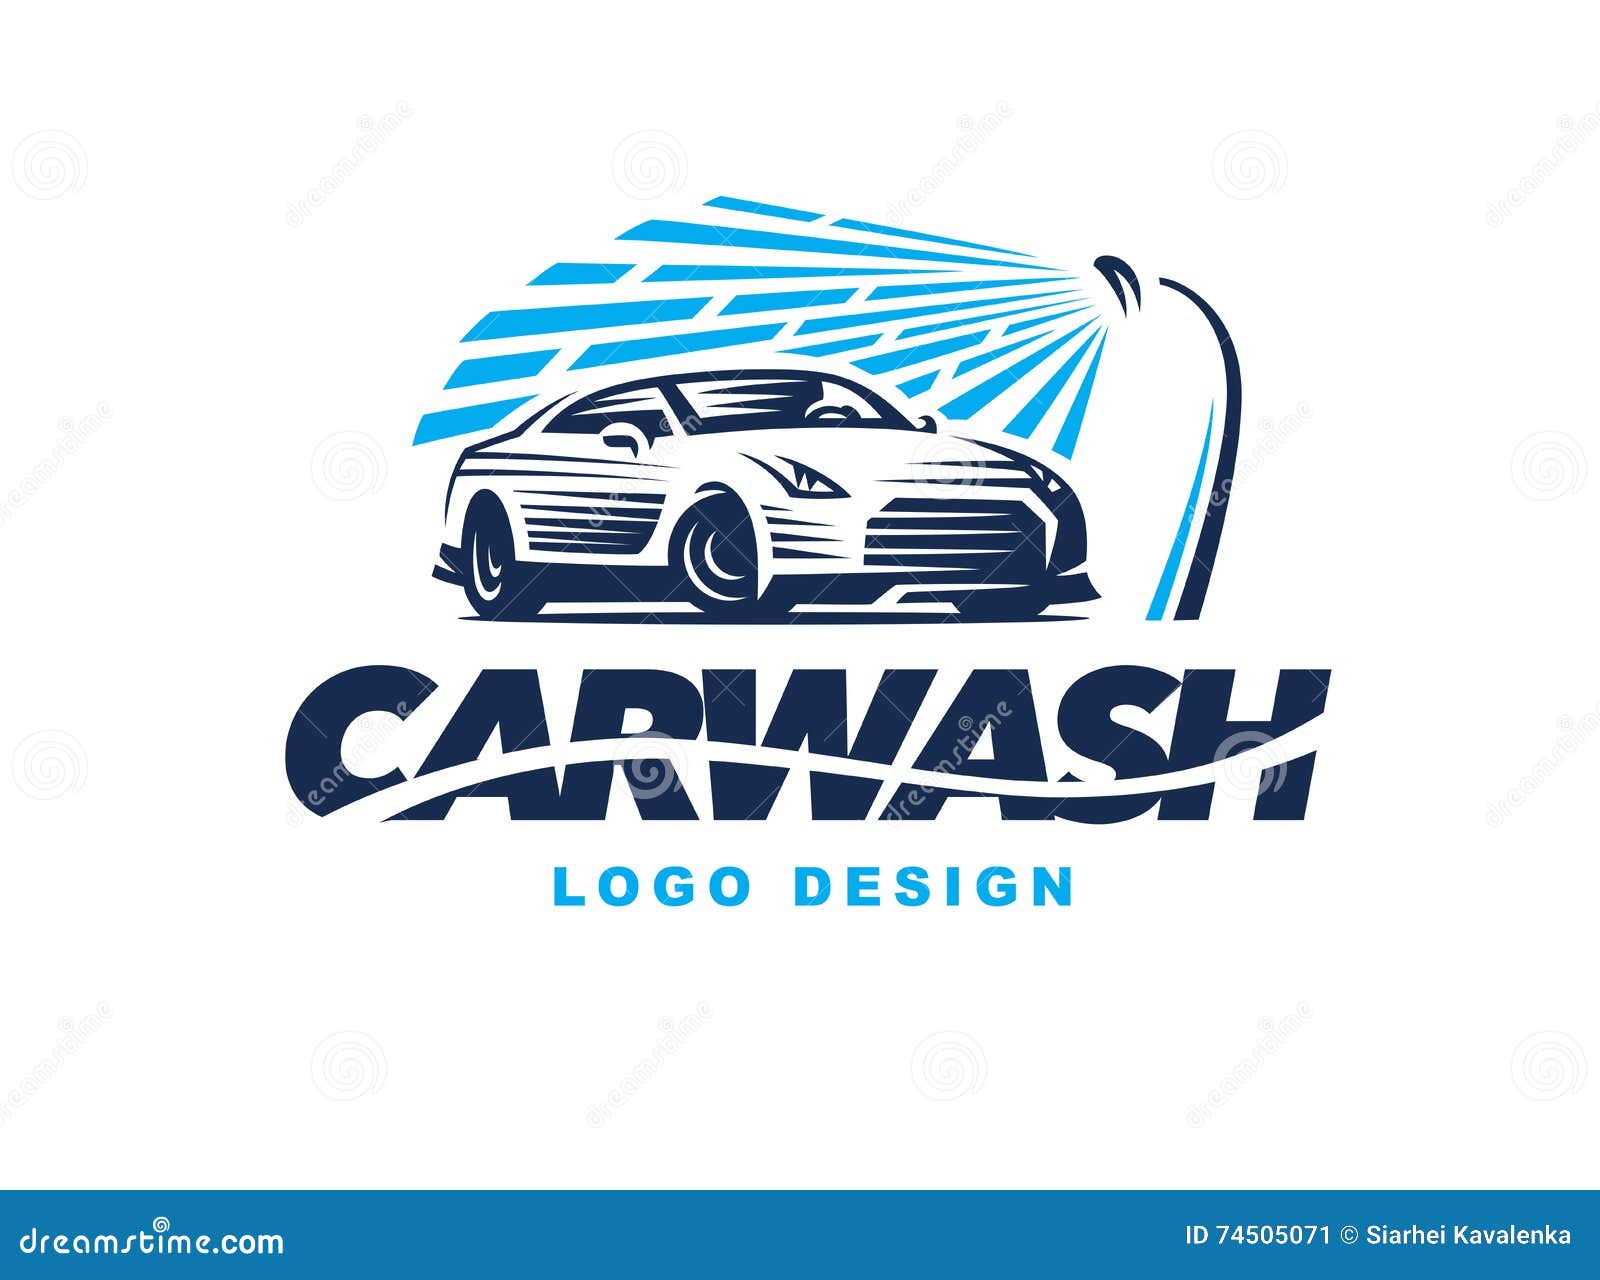 logo car wash on light background.